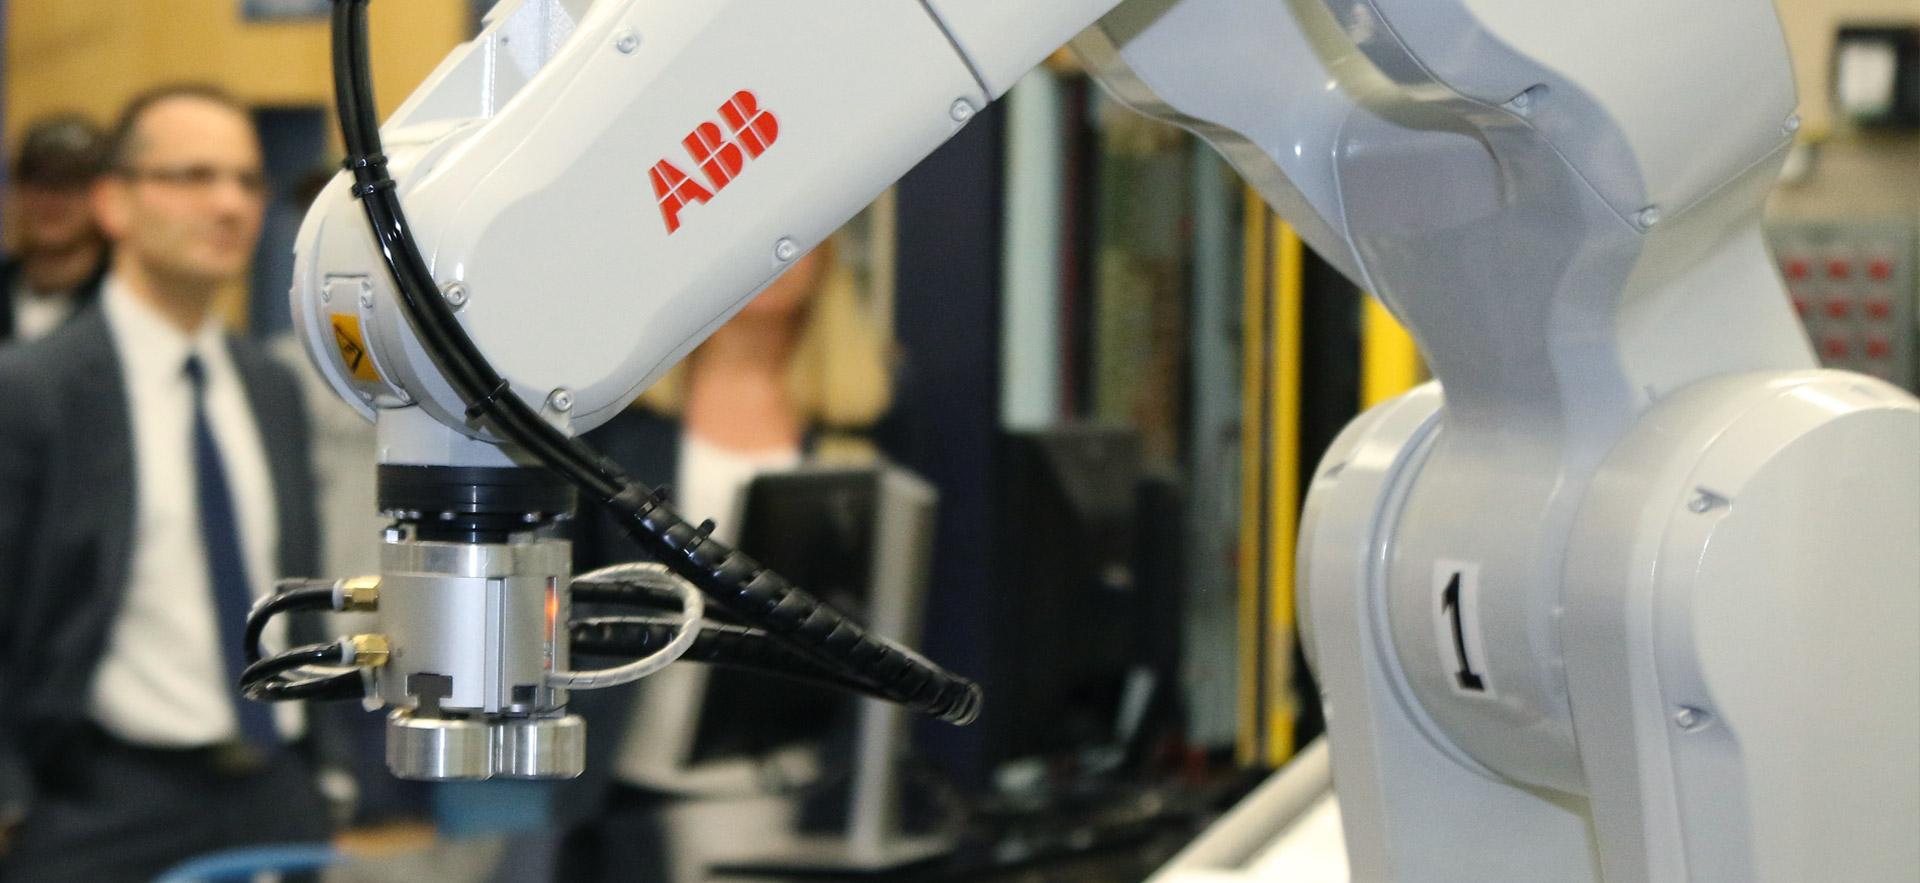 A close-up of a robotic arm.